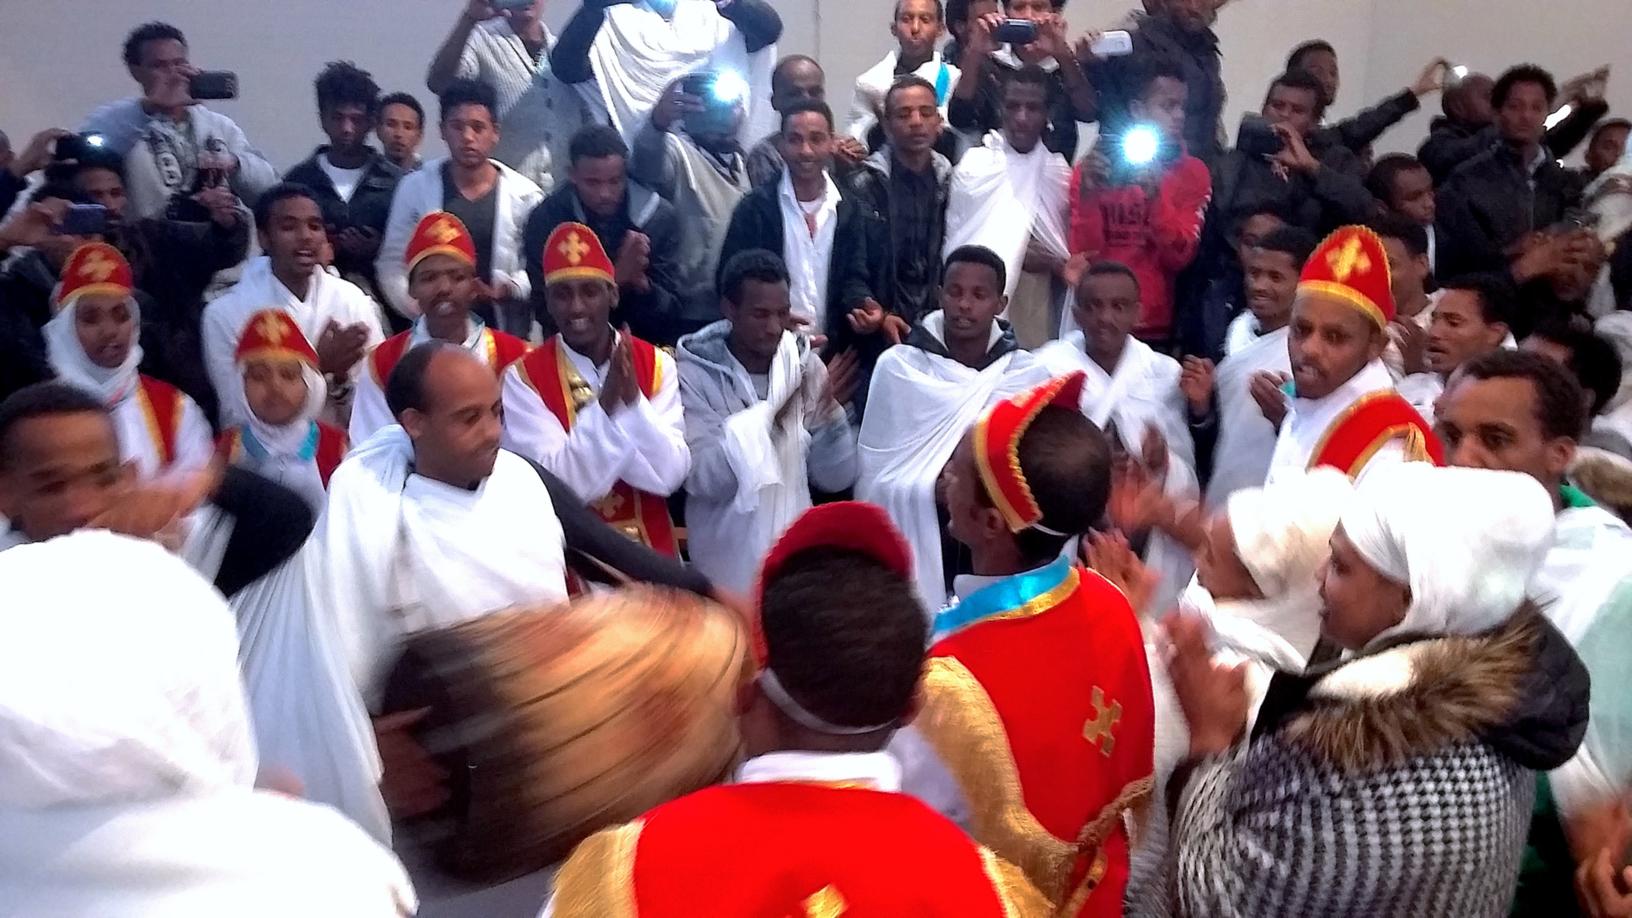 Interkulturelle Begegnung: Eritreisch-orthodoxe Abune Aregawi Gemeinde (c) Förderverein St. Thomas Morus e.V.